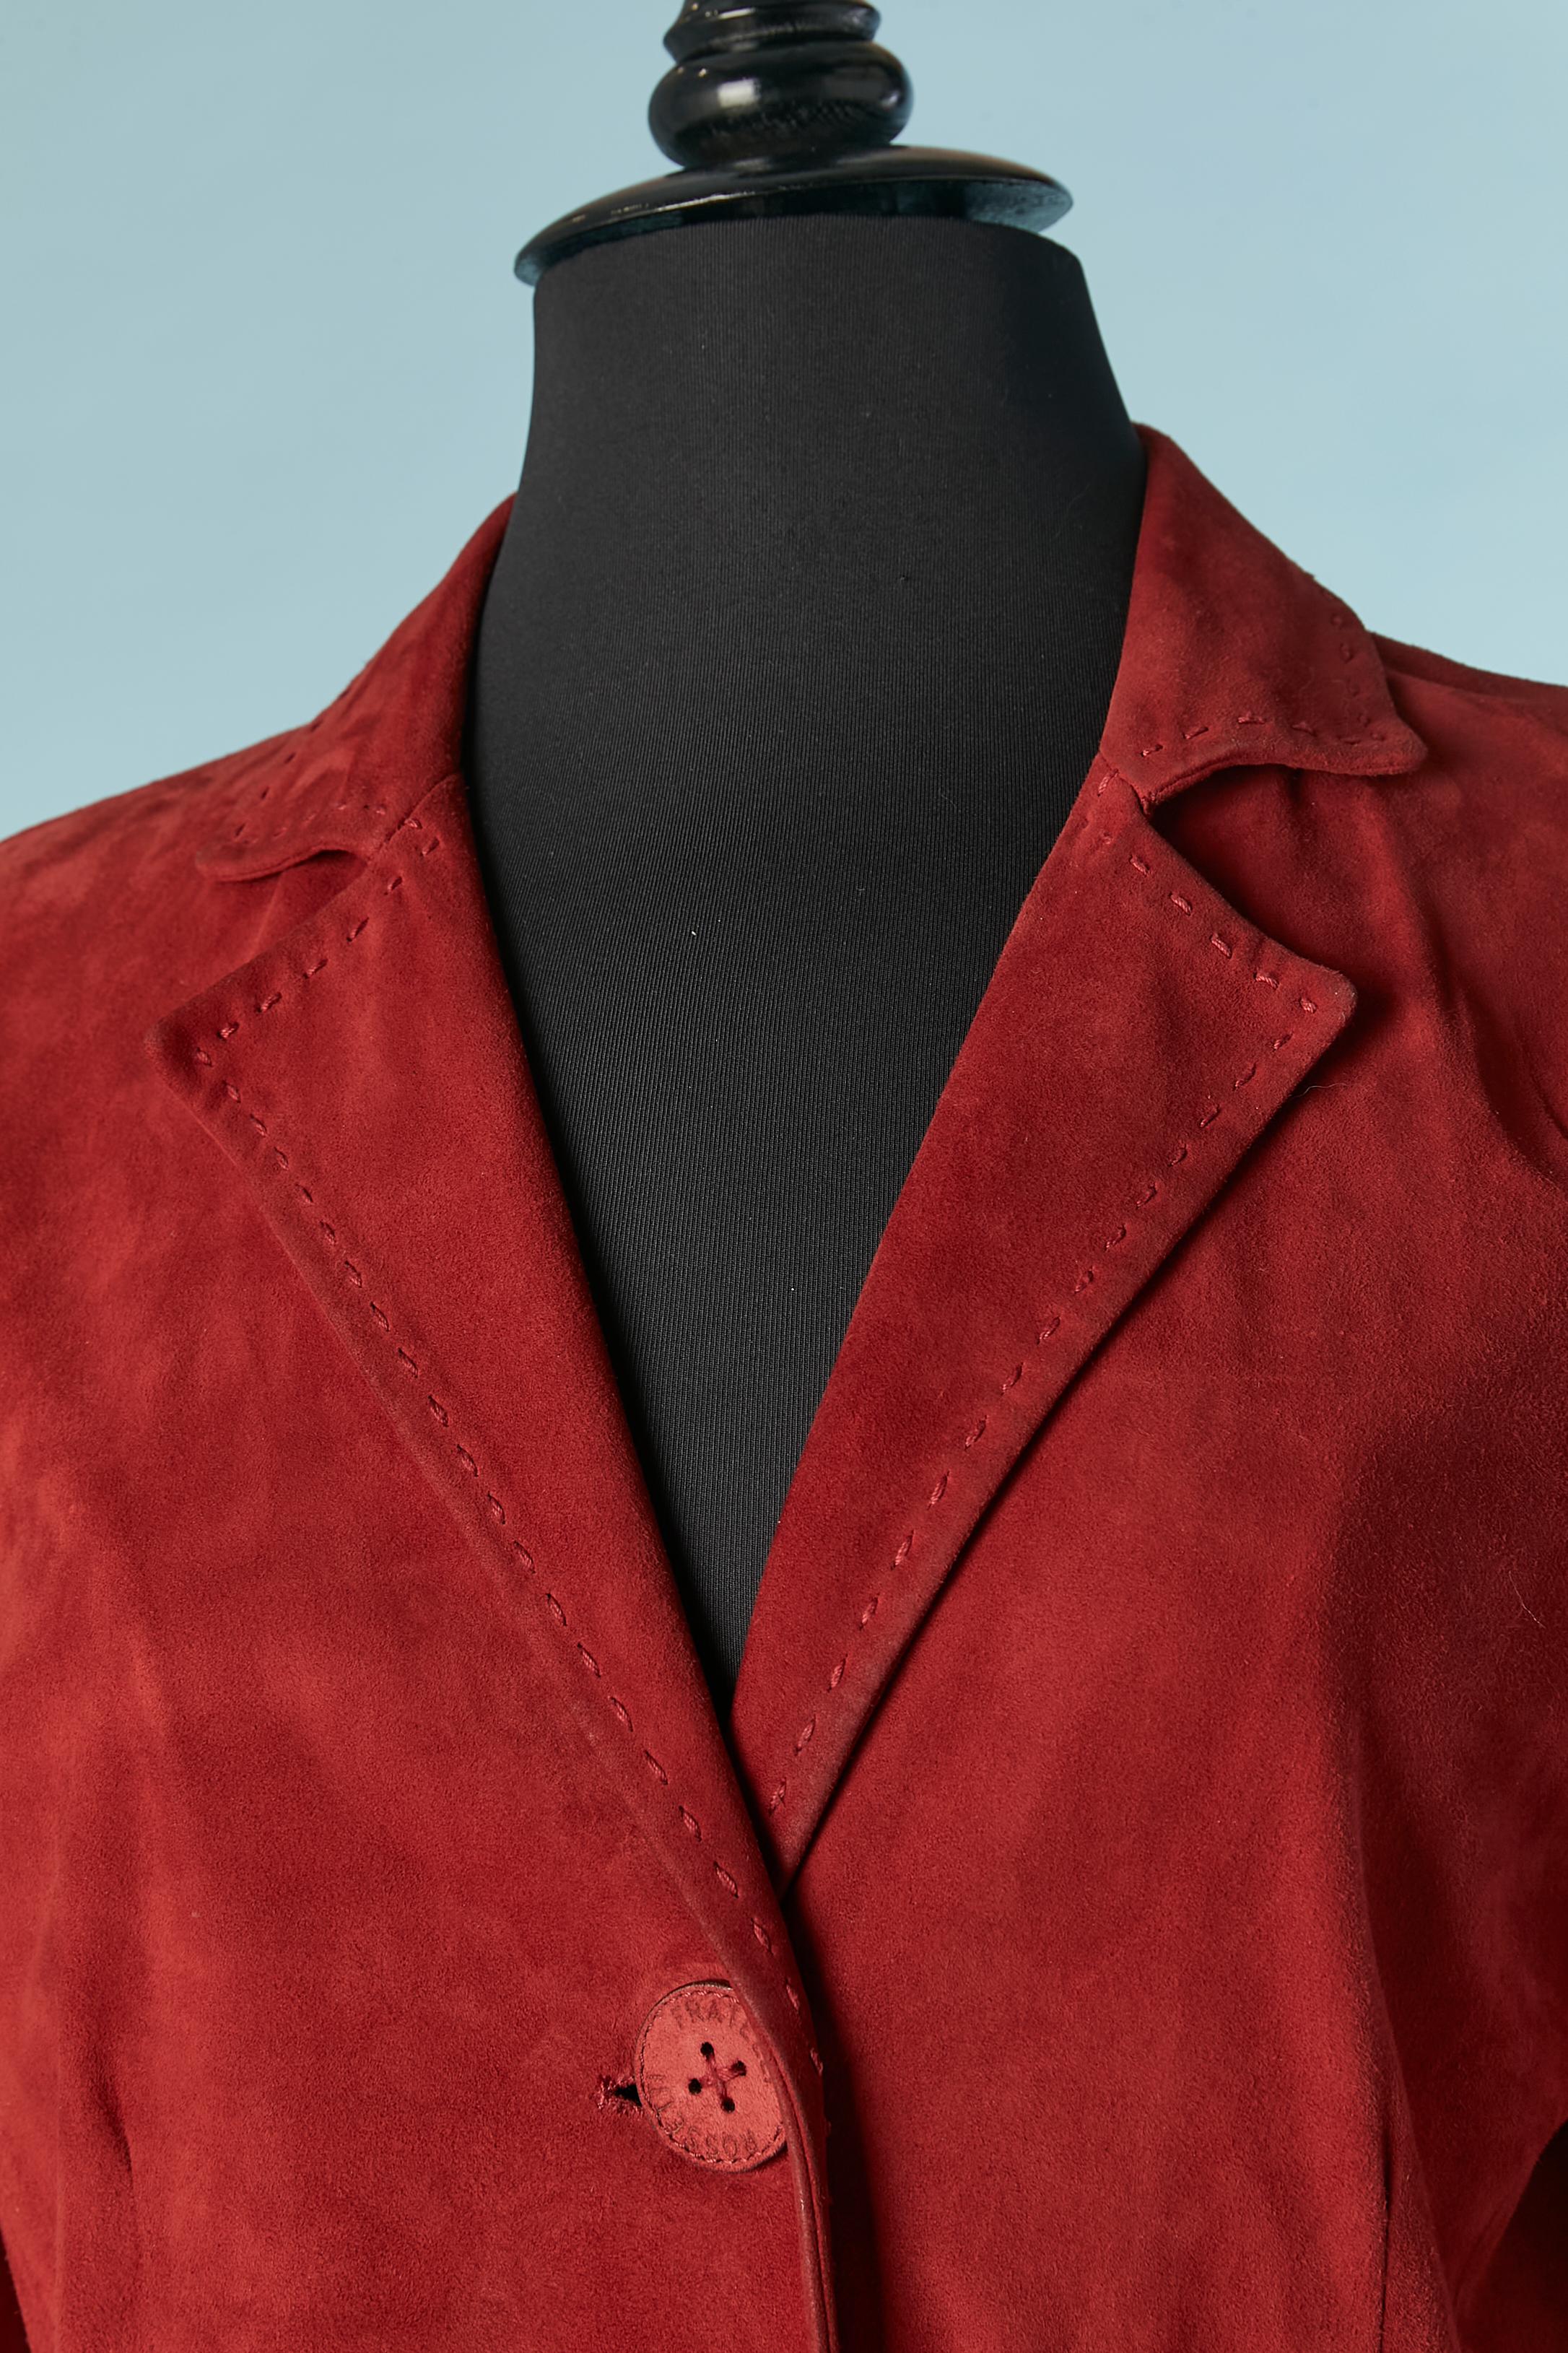 Einreihiger Mantel aus rotem Wildleder . Knöpfe aus Wildleder und Leder mit Markenzeichen. Abgesteppt, mit Schnitt und Taschen auf beiden Seiten und Baumwollfutter. Der Mantel ist nicht gefüttert.
GRÖSSE 40 / L 